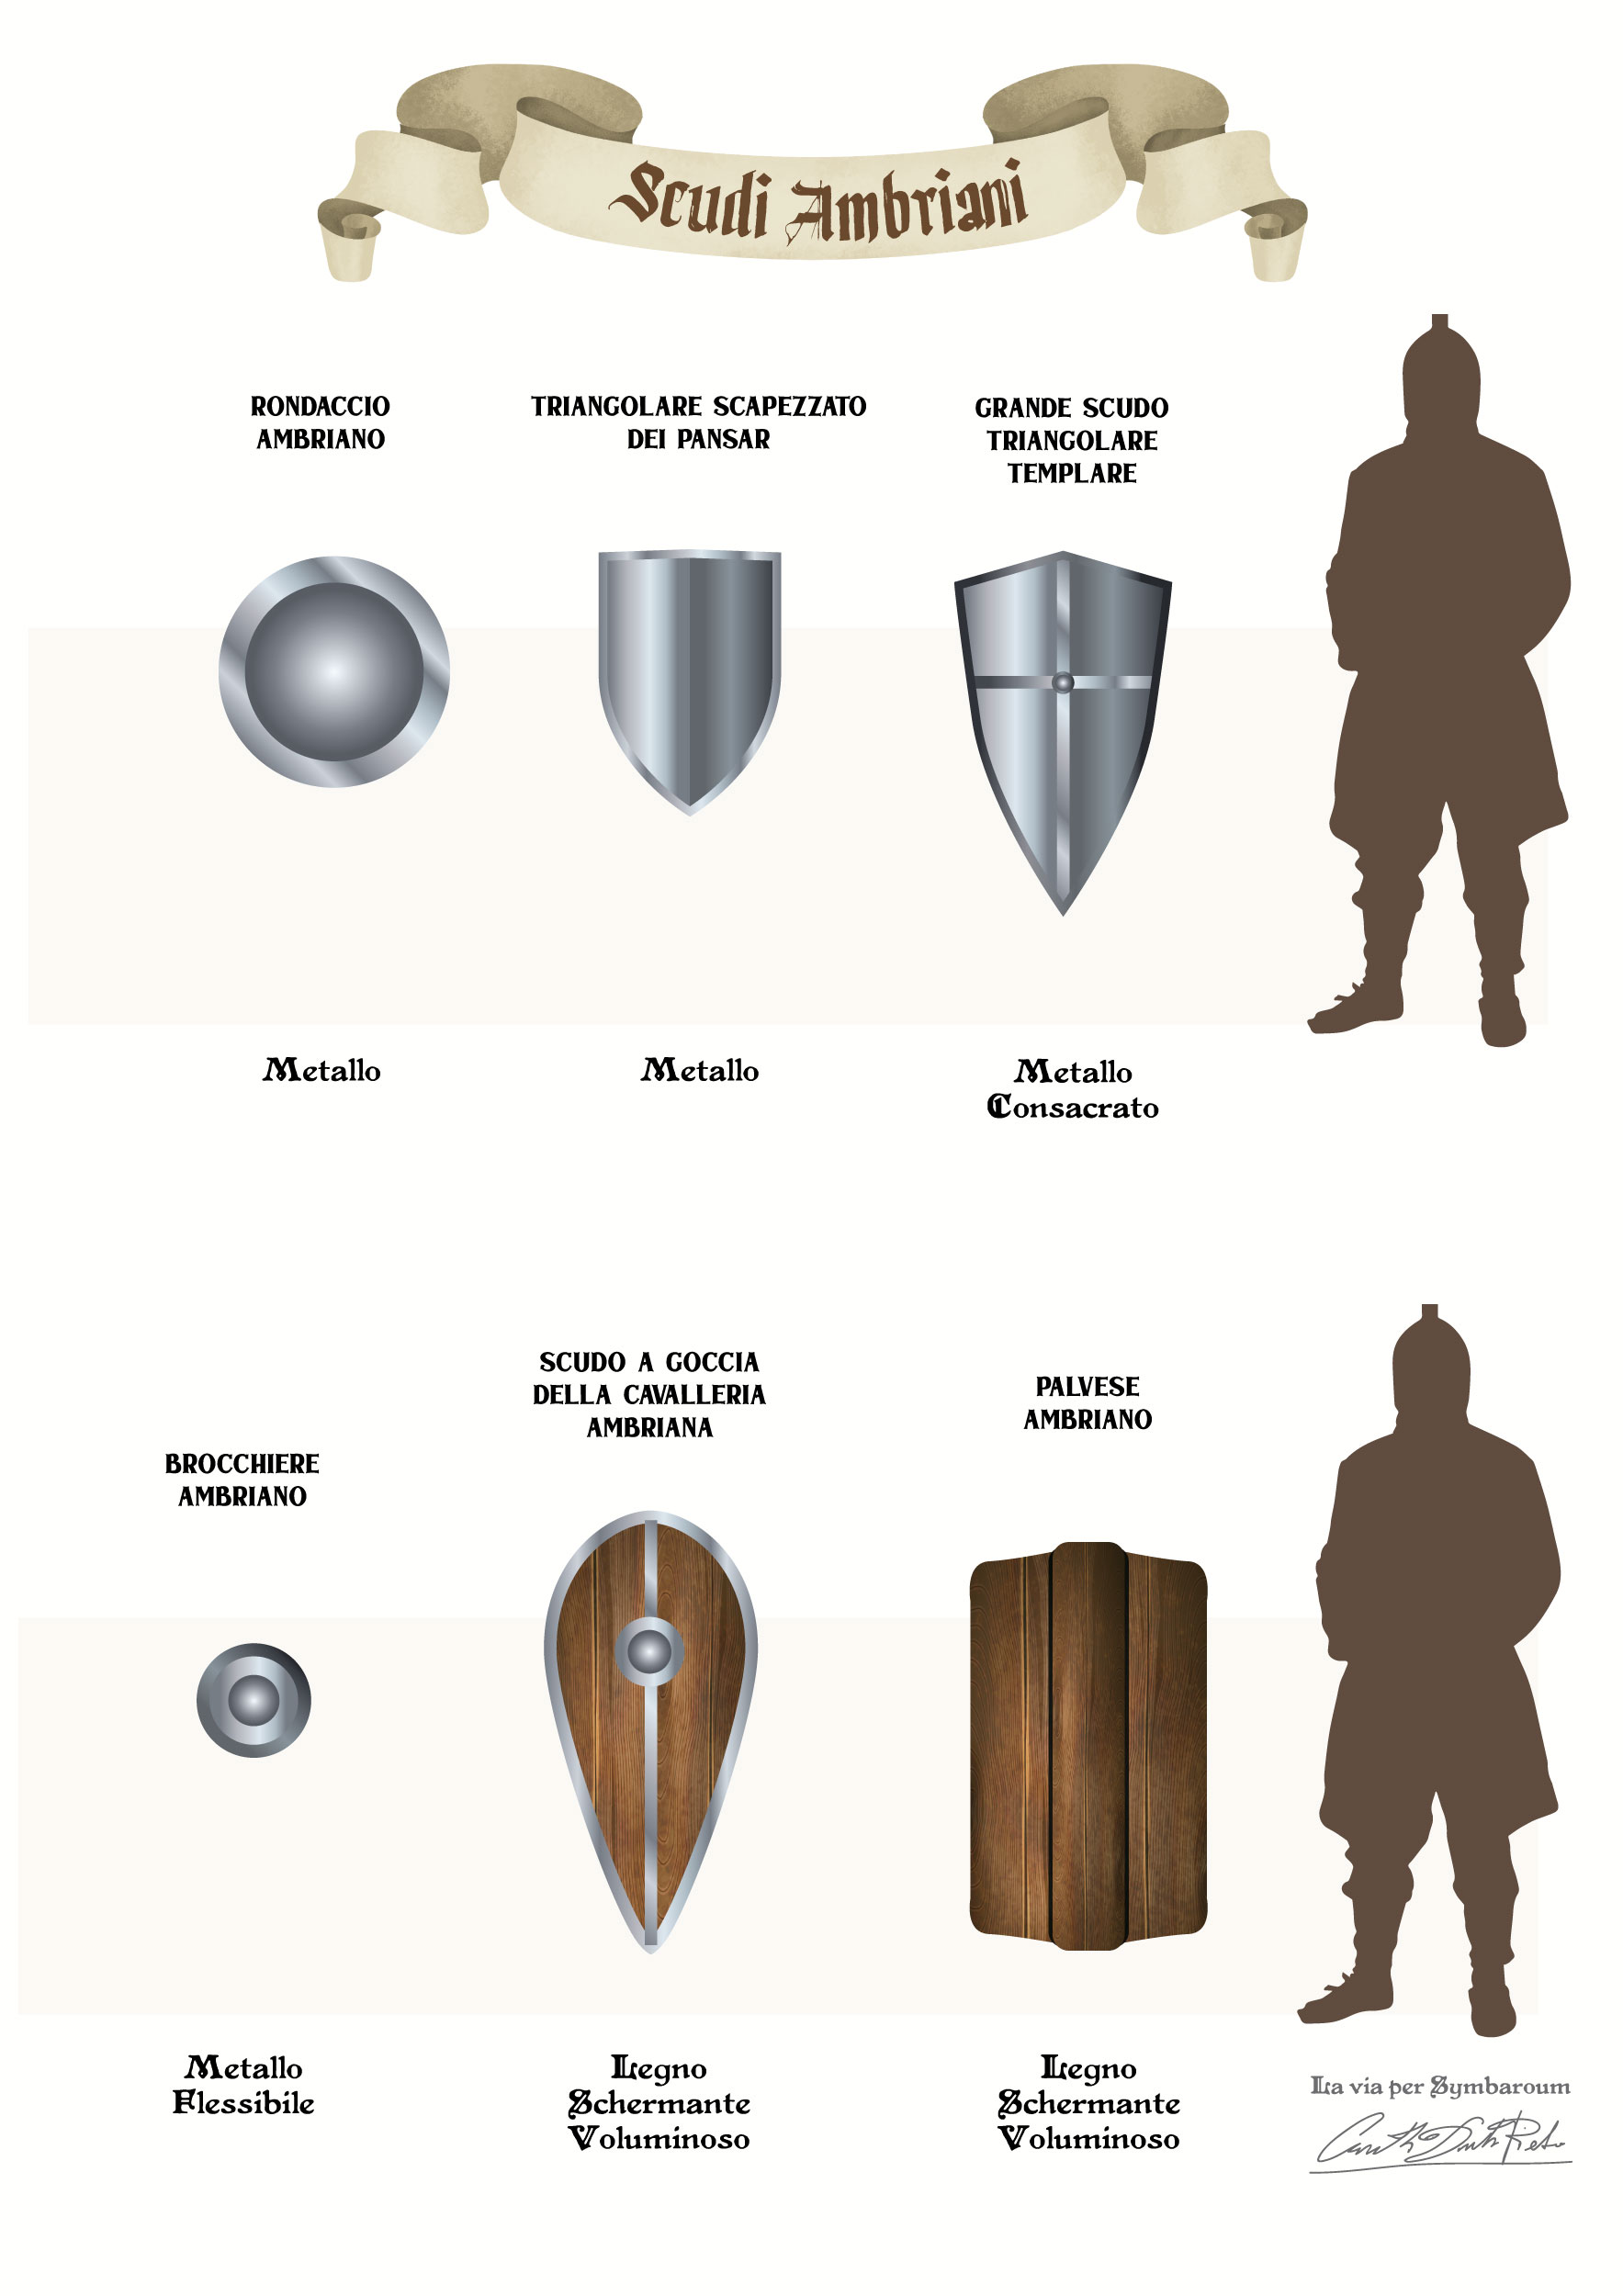 Immagini di scudi medievali ambriani